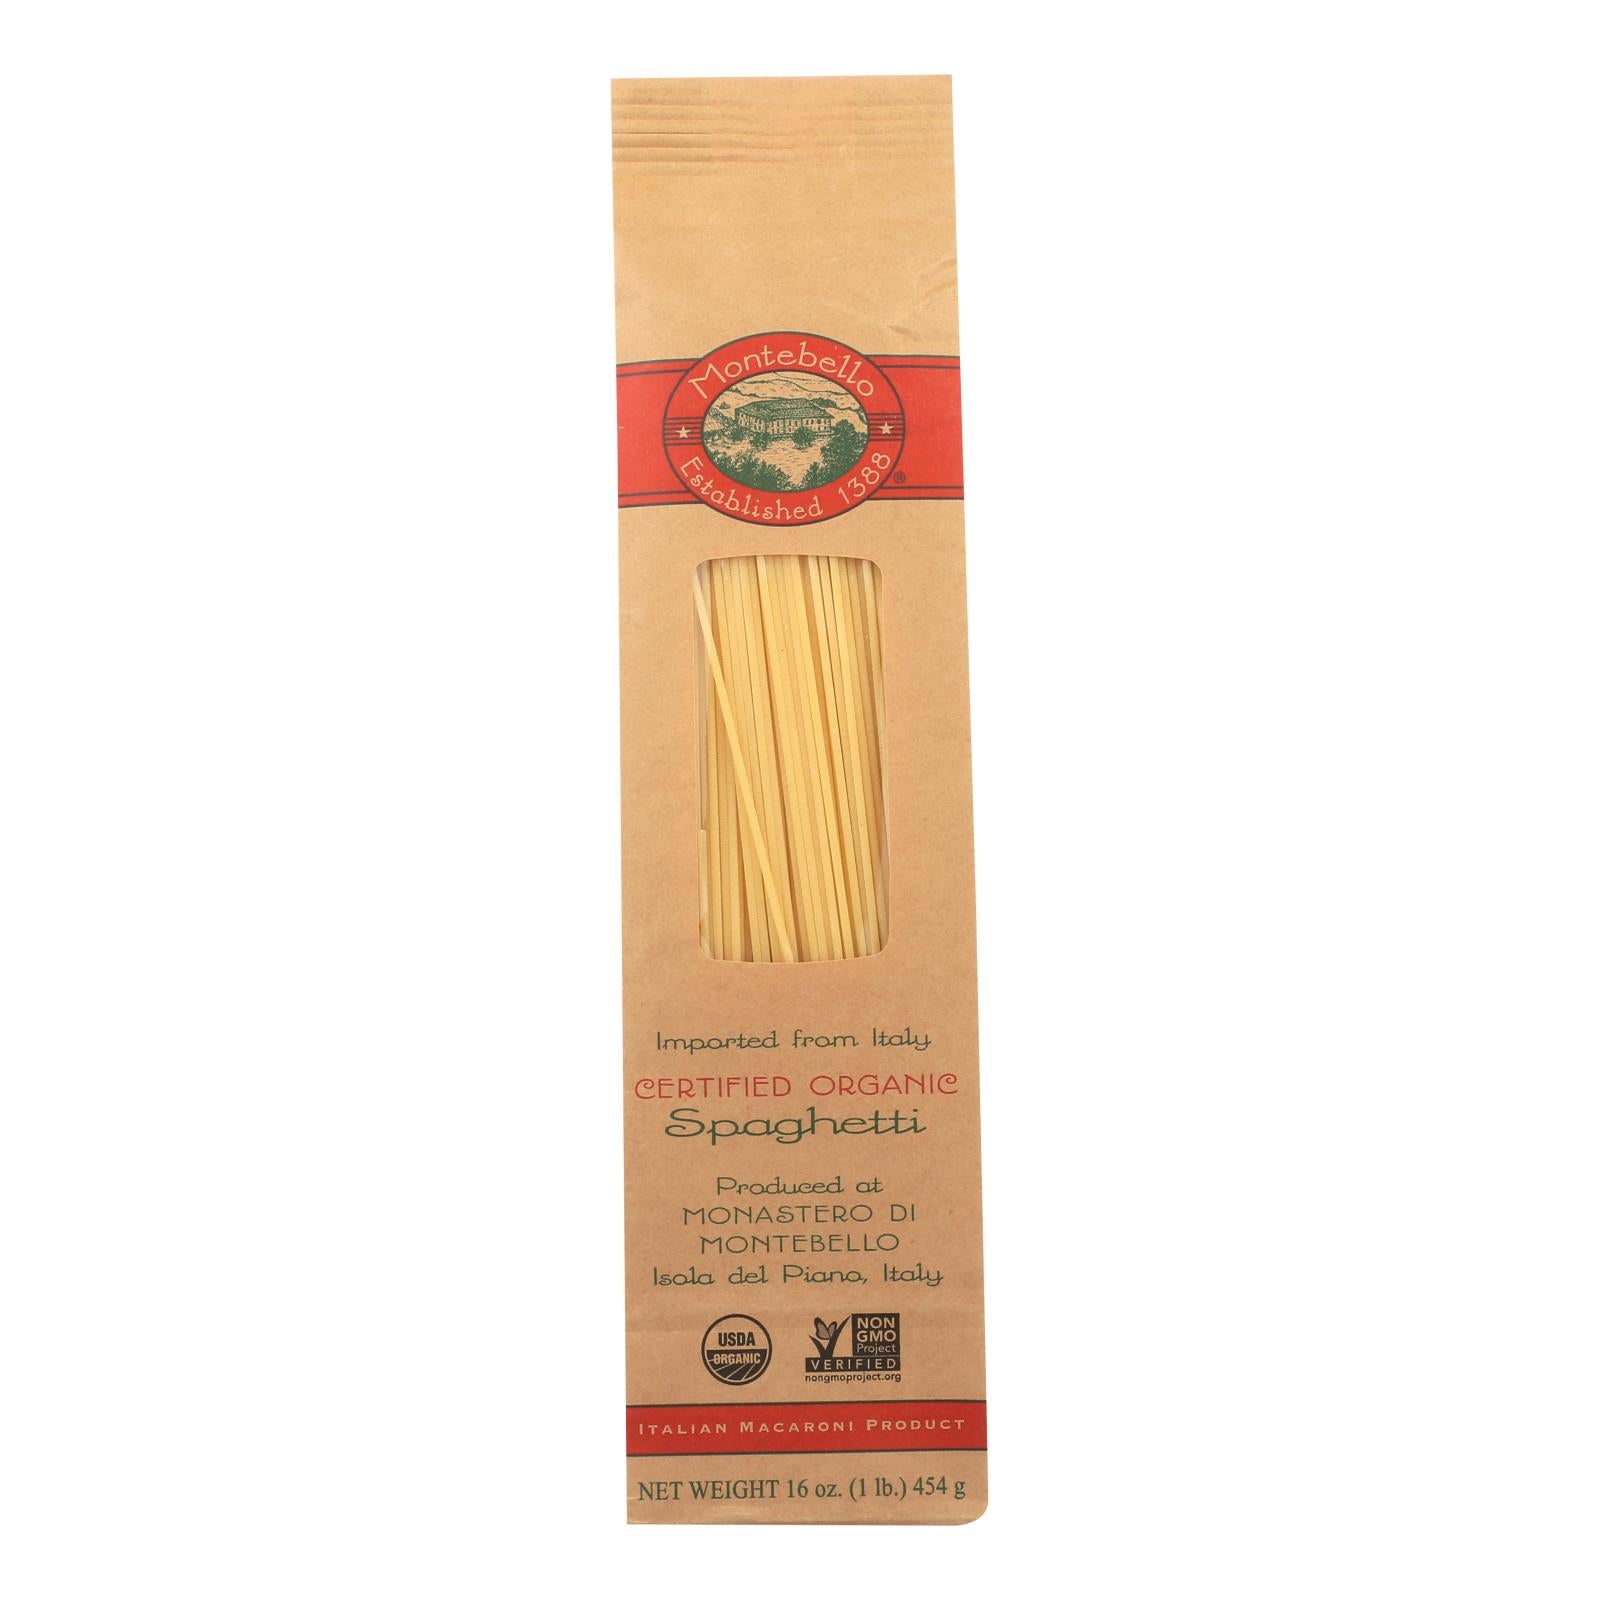 Montebello Organic Pasta - Spaghetti - Case of 12 - 1 lb.